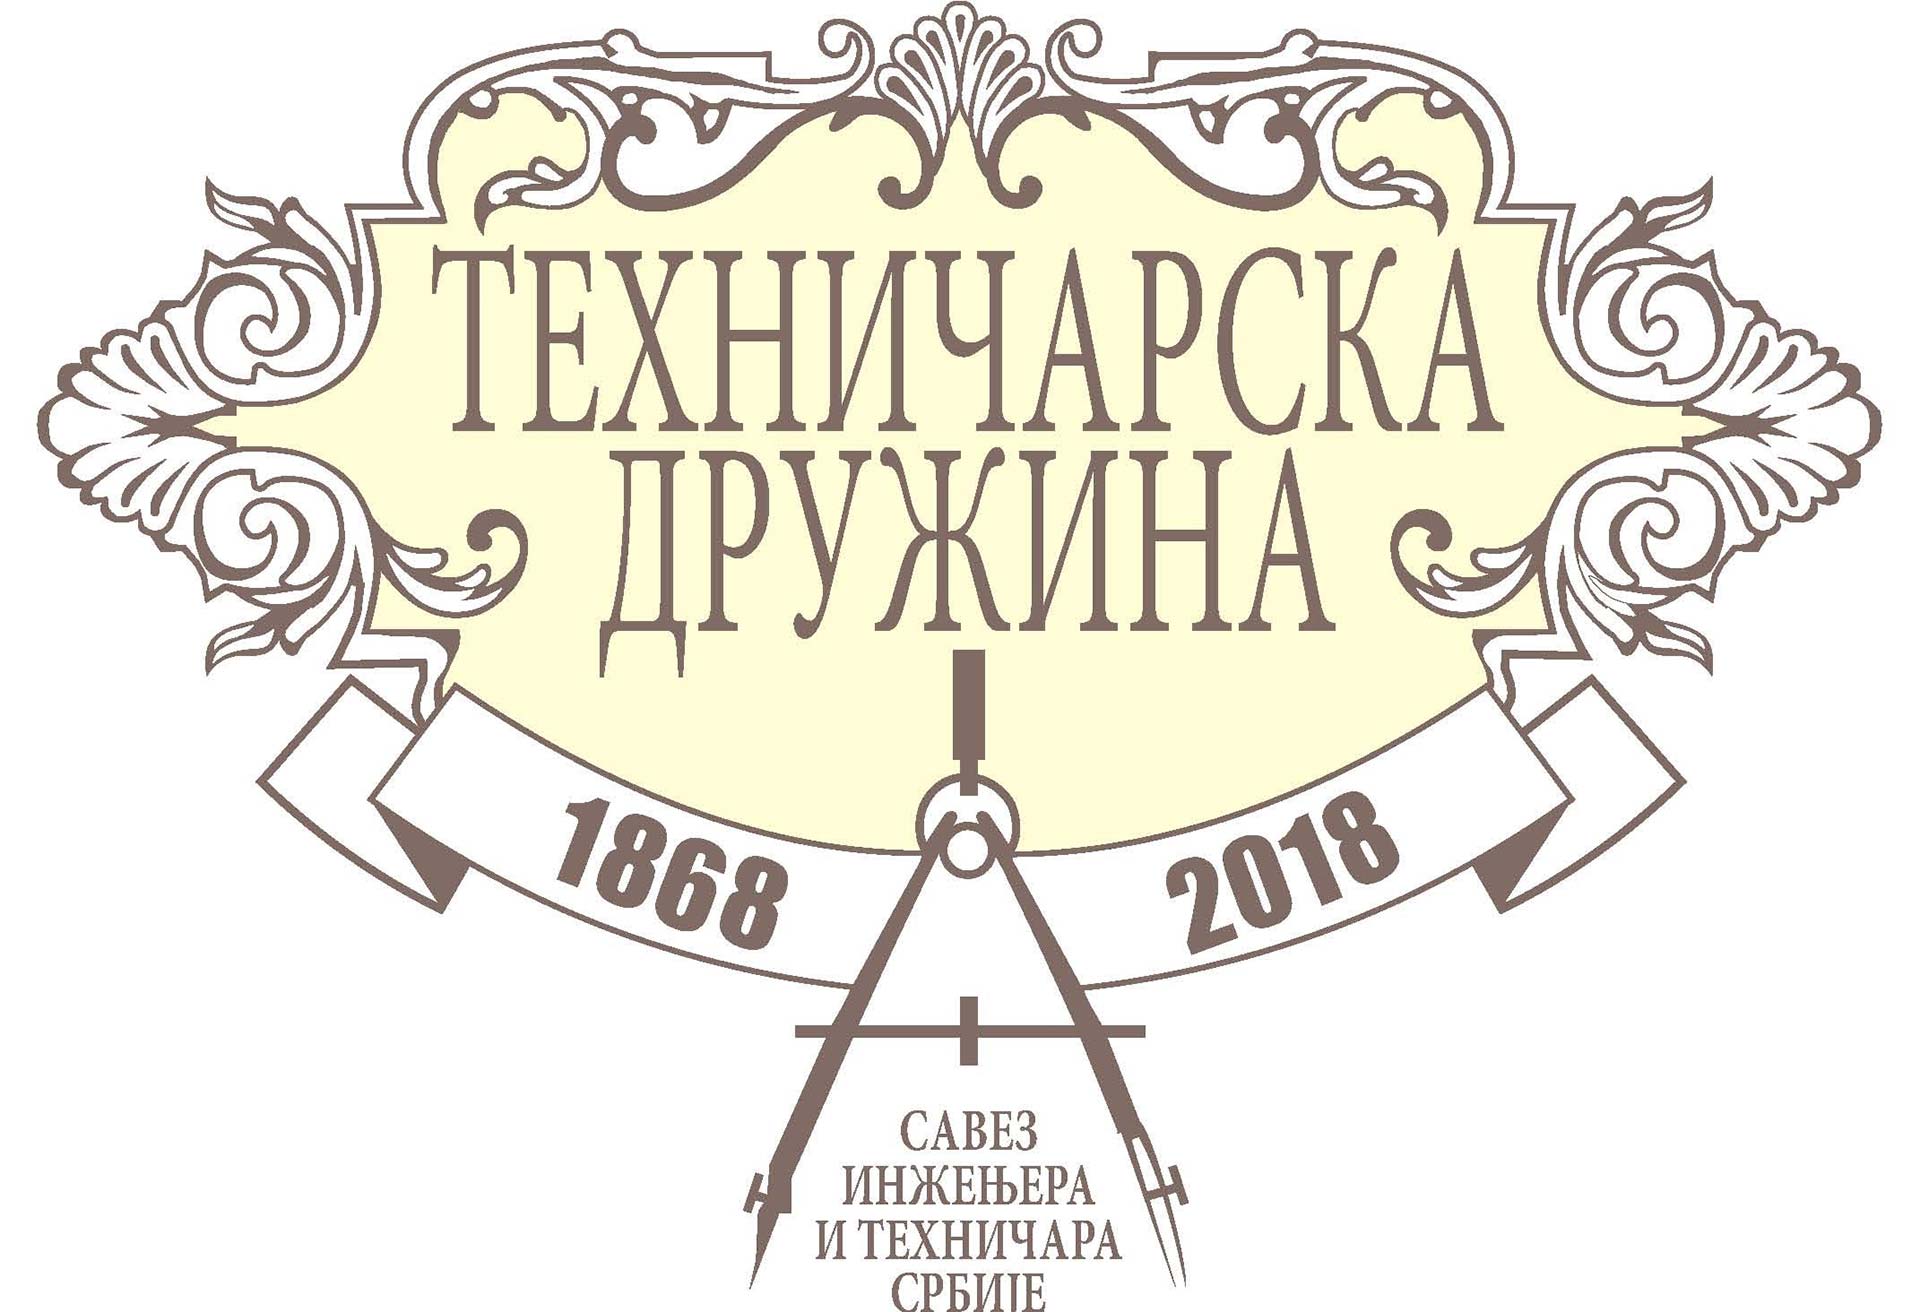 Savez inženjera i tehničara Srbije Logo